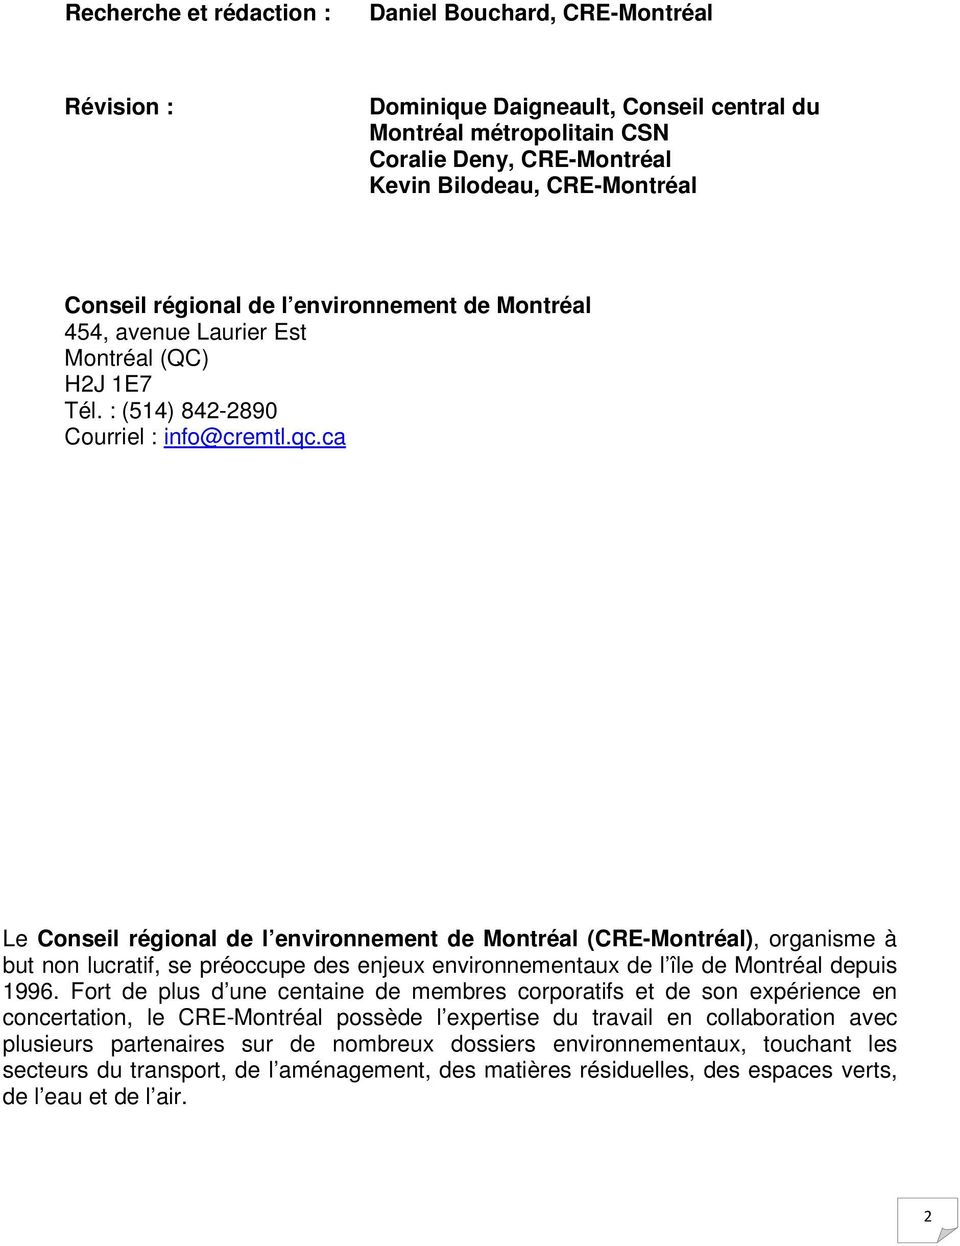 ca Le Conseil régional de l environnement de Montréal (CRE-Montréal), organisme à but non lucratif, se préoccupe des enjeux environnementaux de l île de Montréal depuis 1996.